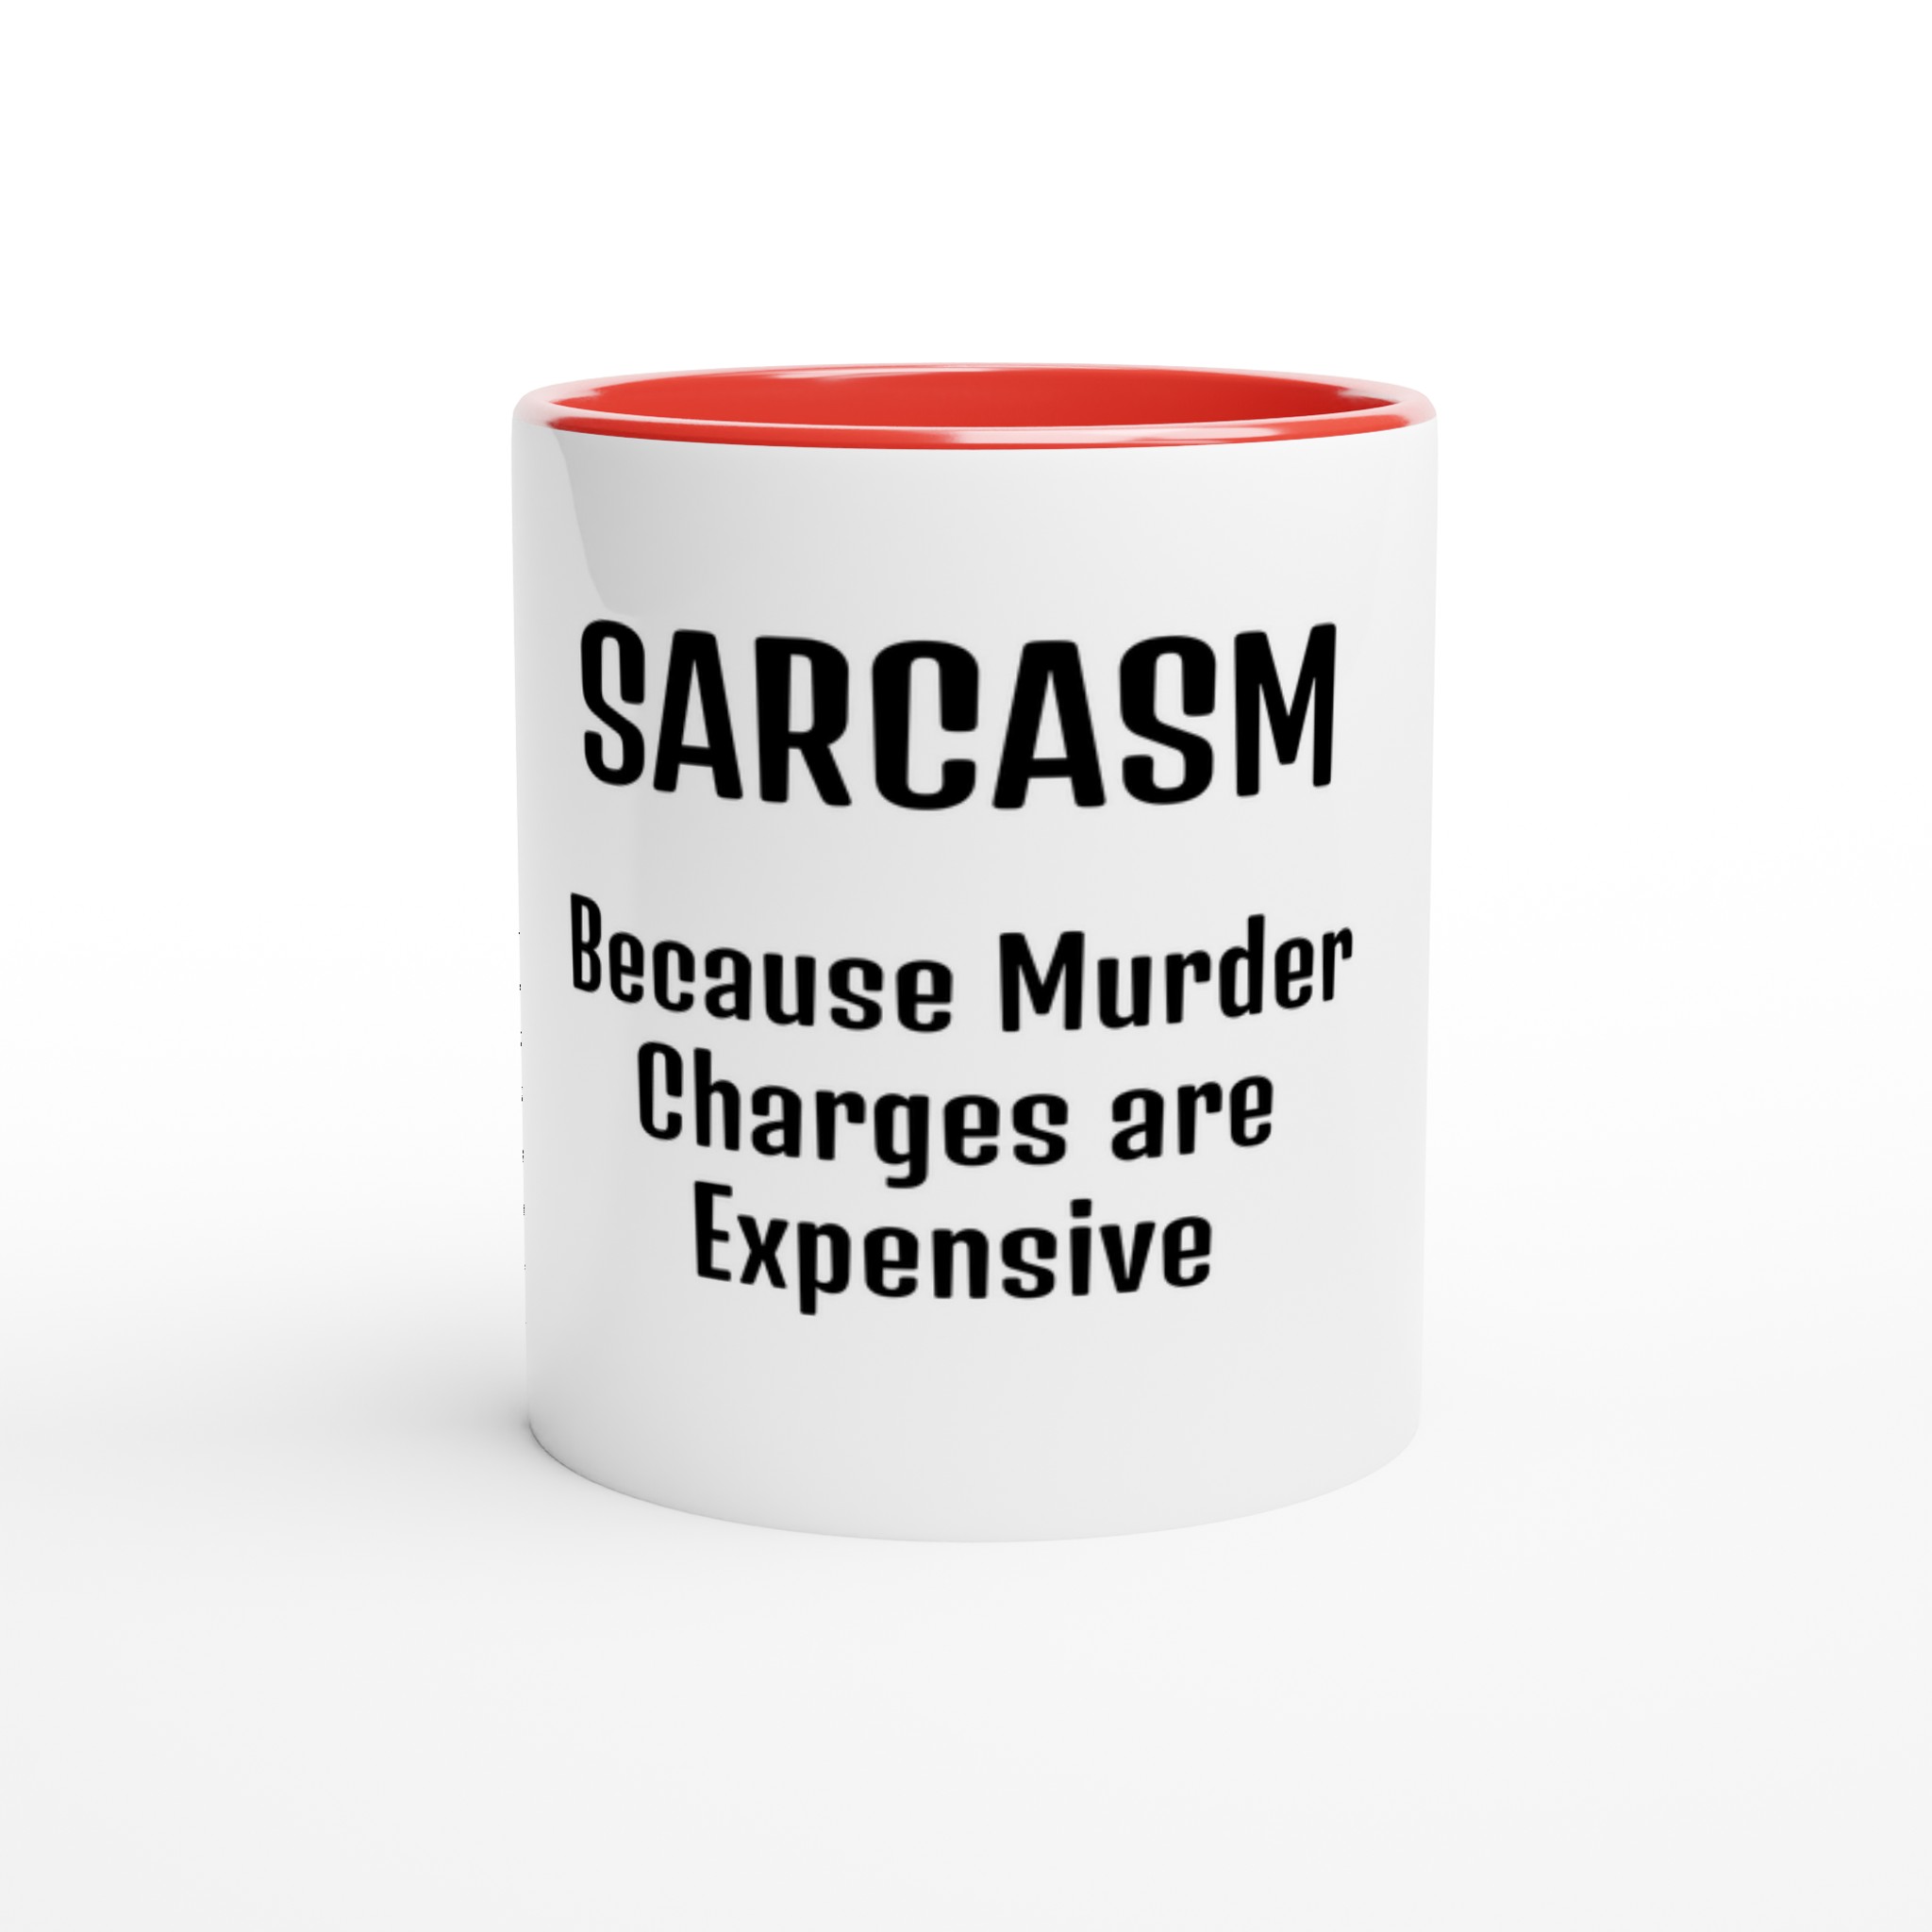 sarcasm mug red